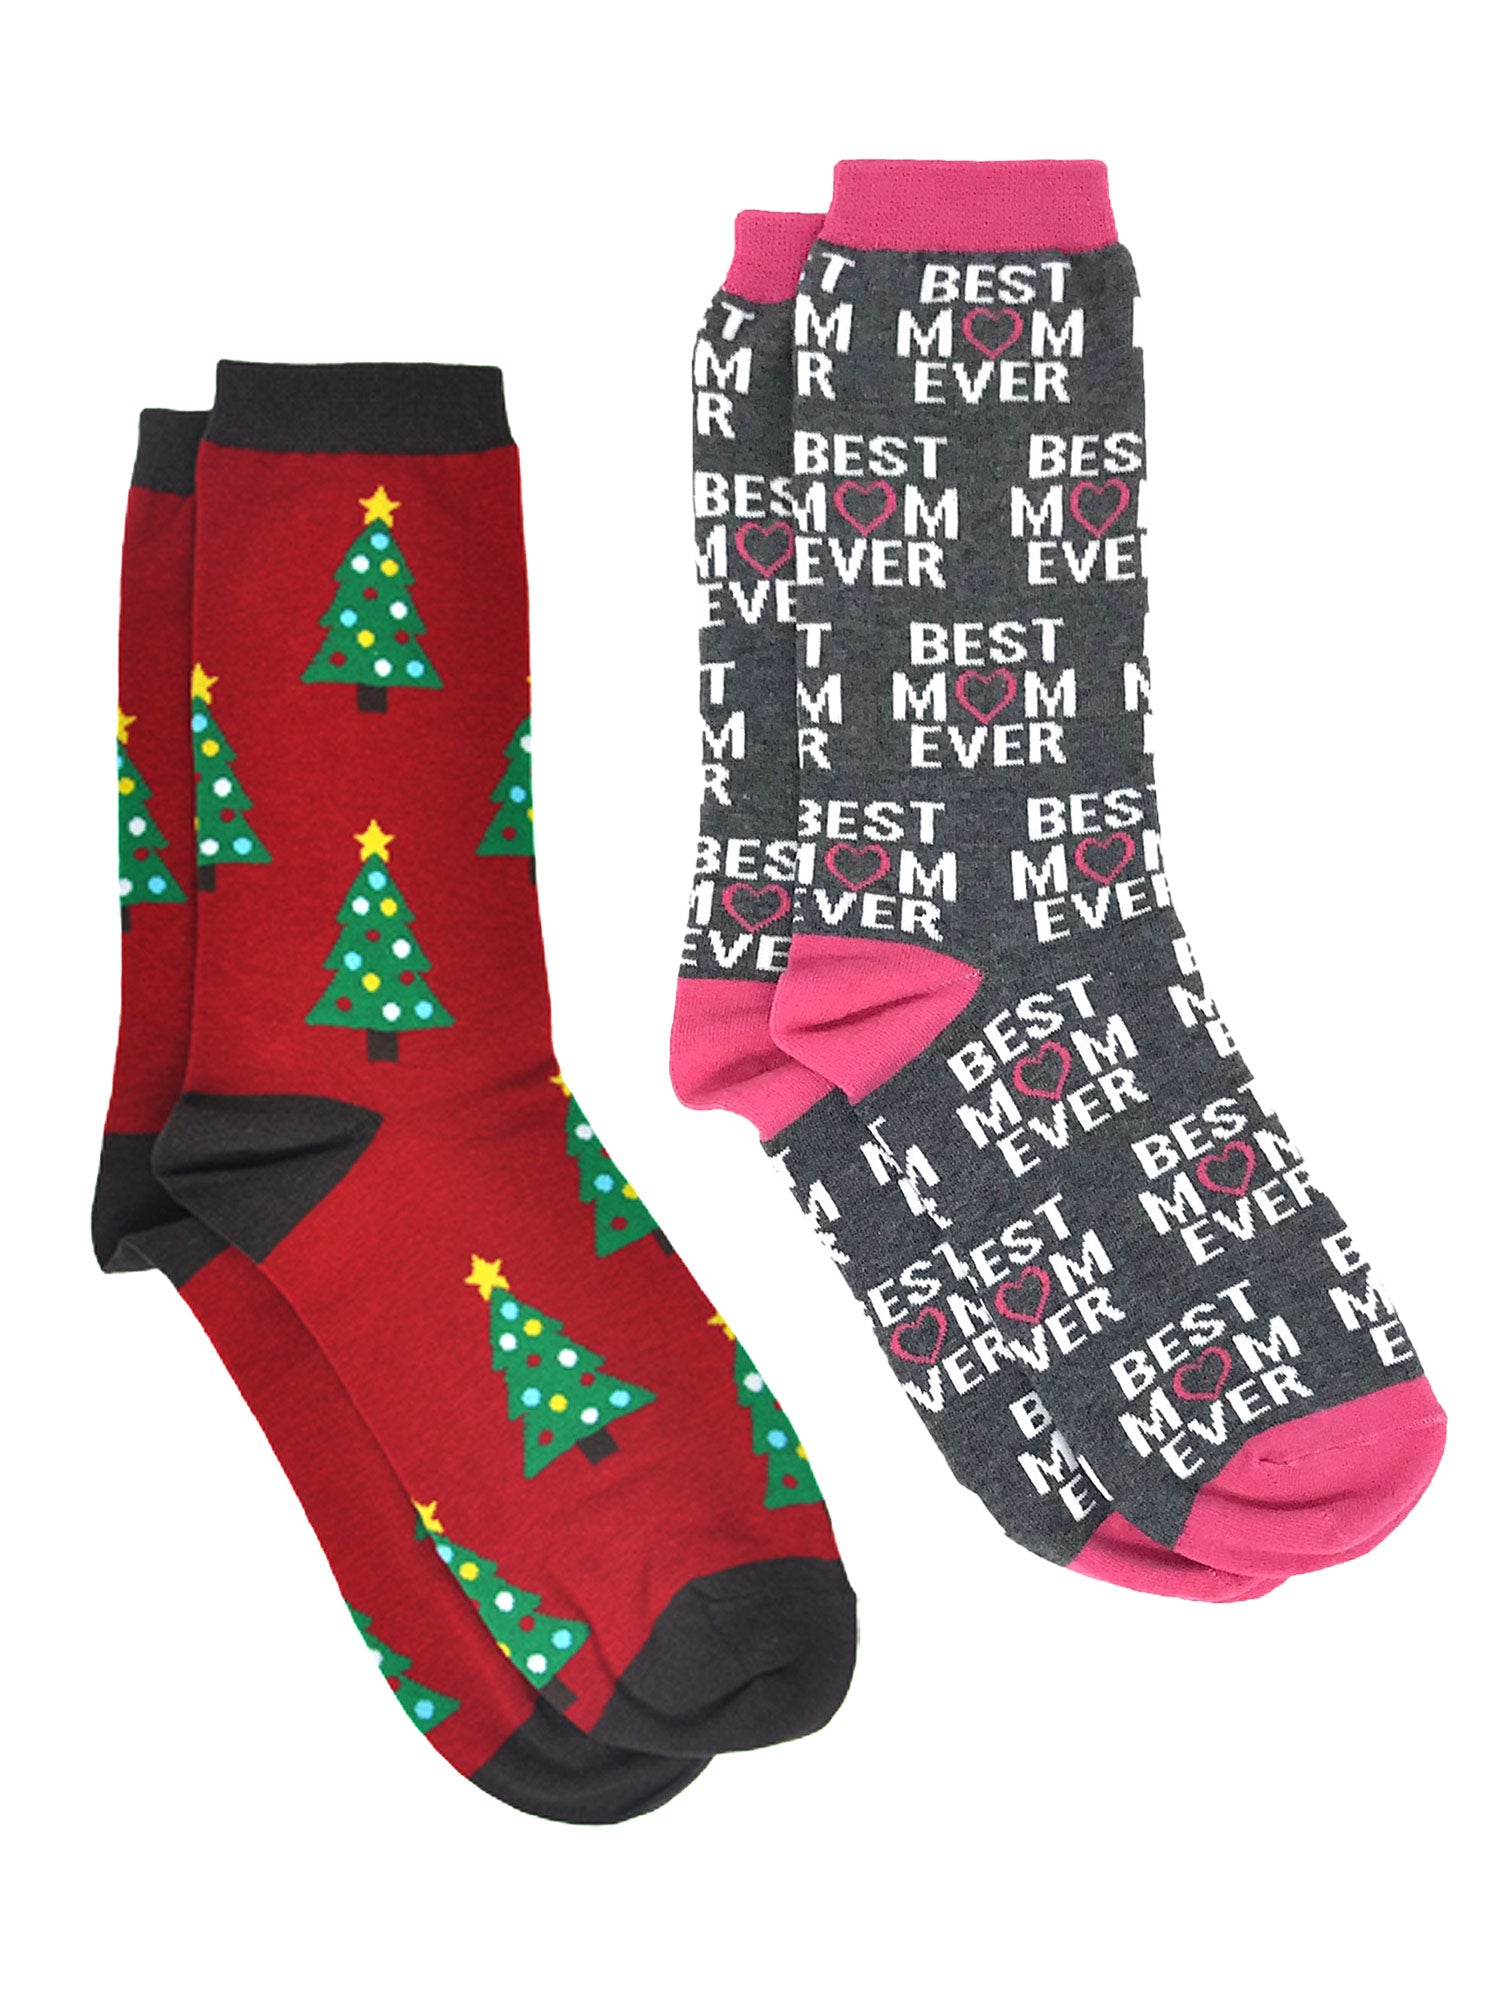 Christmas Women's All-Over Christmas Tree & Best Mom Ever Socks 2-Pair Set